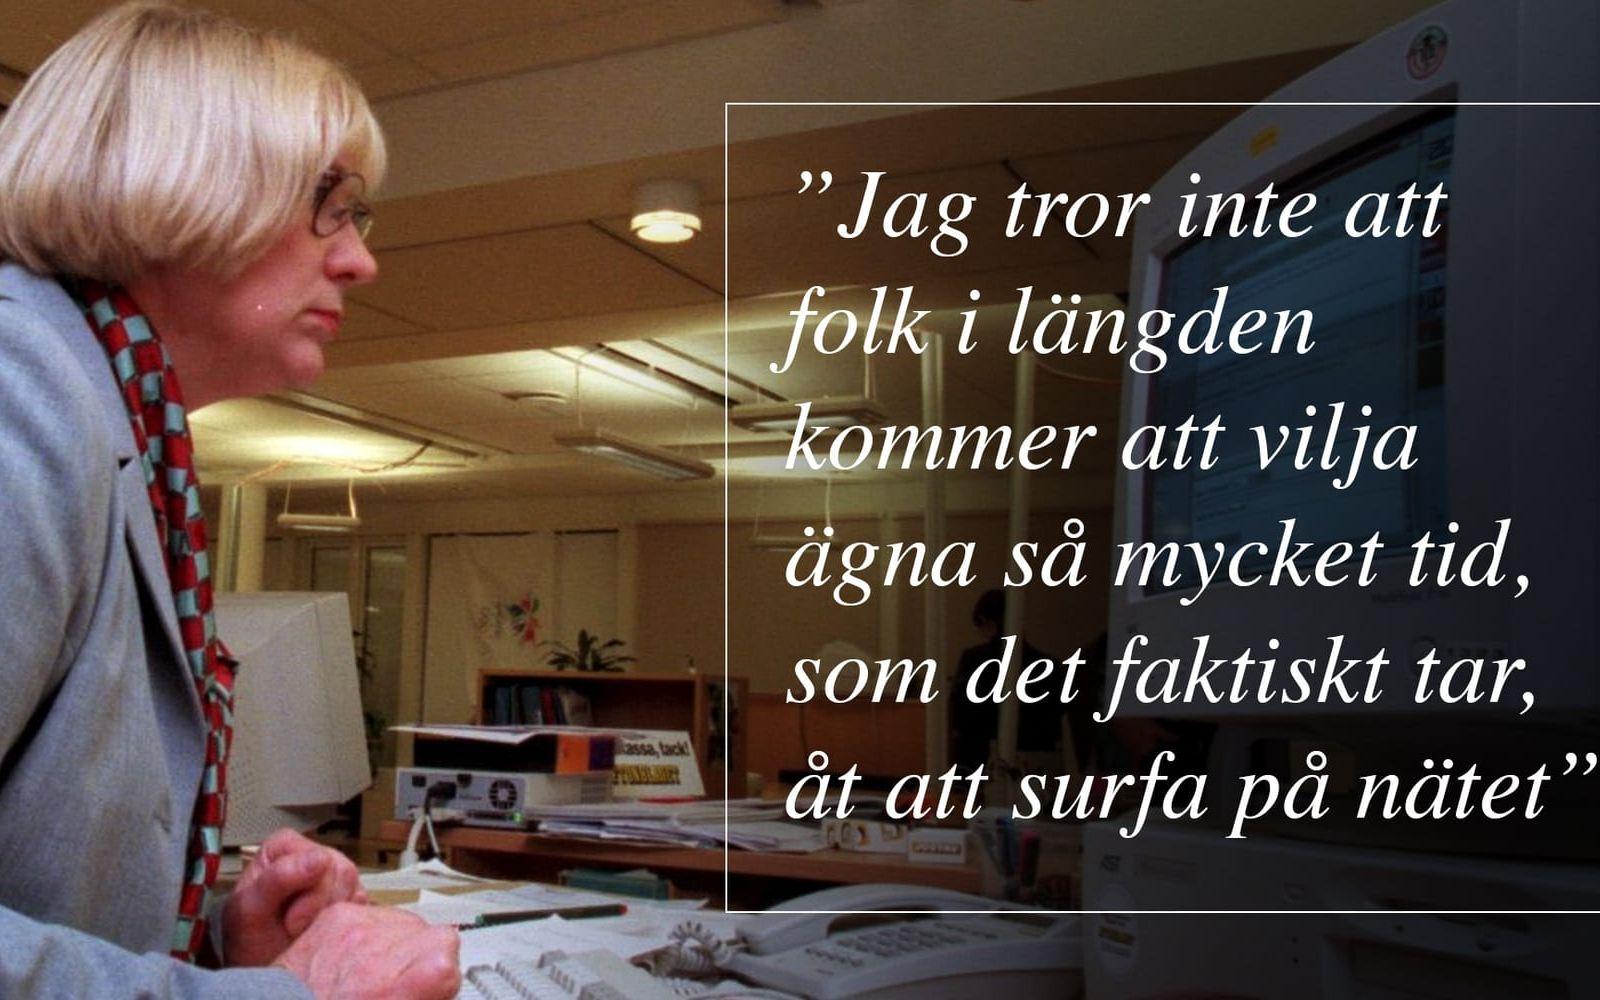 Ines Uusmann, kommunikationsminister, 1994- 1998, i en intervju i SvD 1996. Hon sa aldrig "Internet är en fluga", det var snarare en tillspetsade rubrik, men hon har senare medgett att den fångade andemeningen i vad hon sa korrekt. Foto: TT